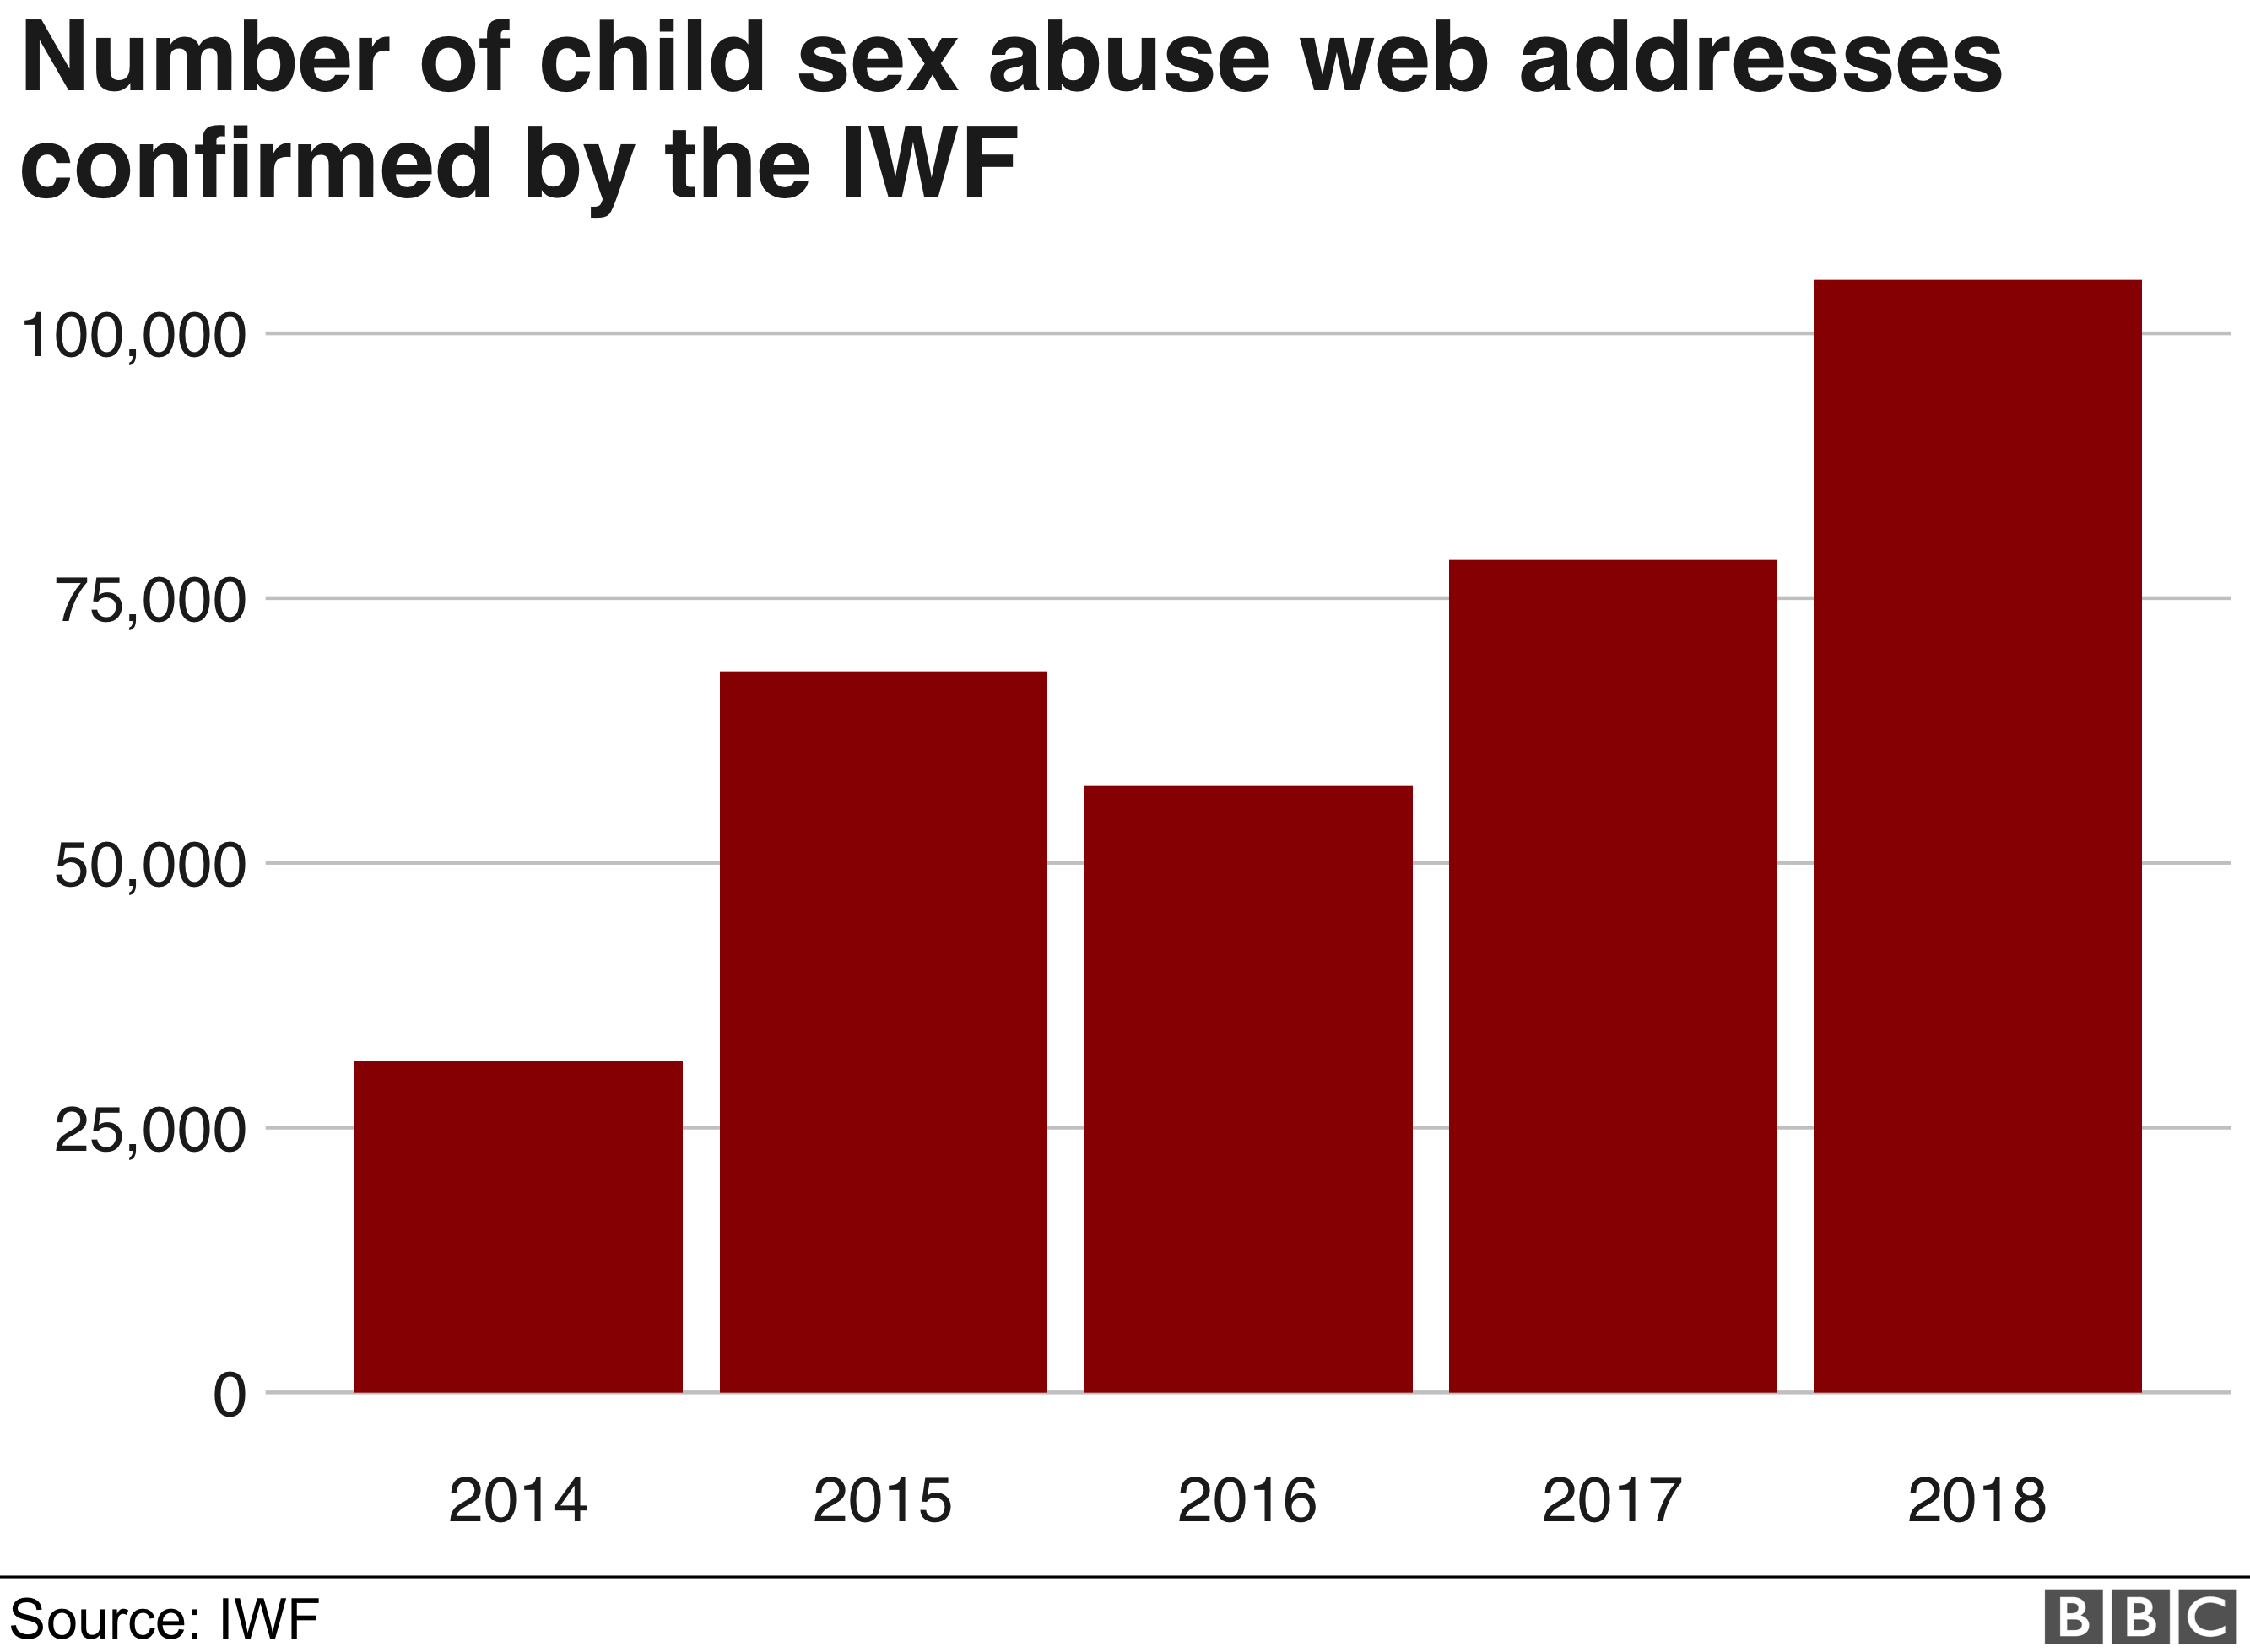 Количество веб-адресов с сексуальным насилием над детьми, подтвержденных IWF: более 100 000 в 2018 году